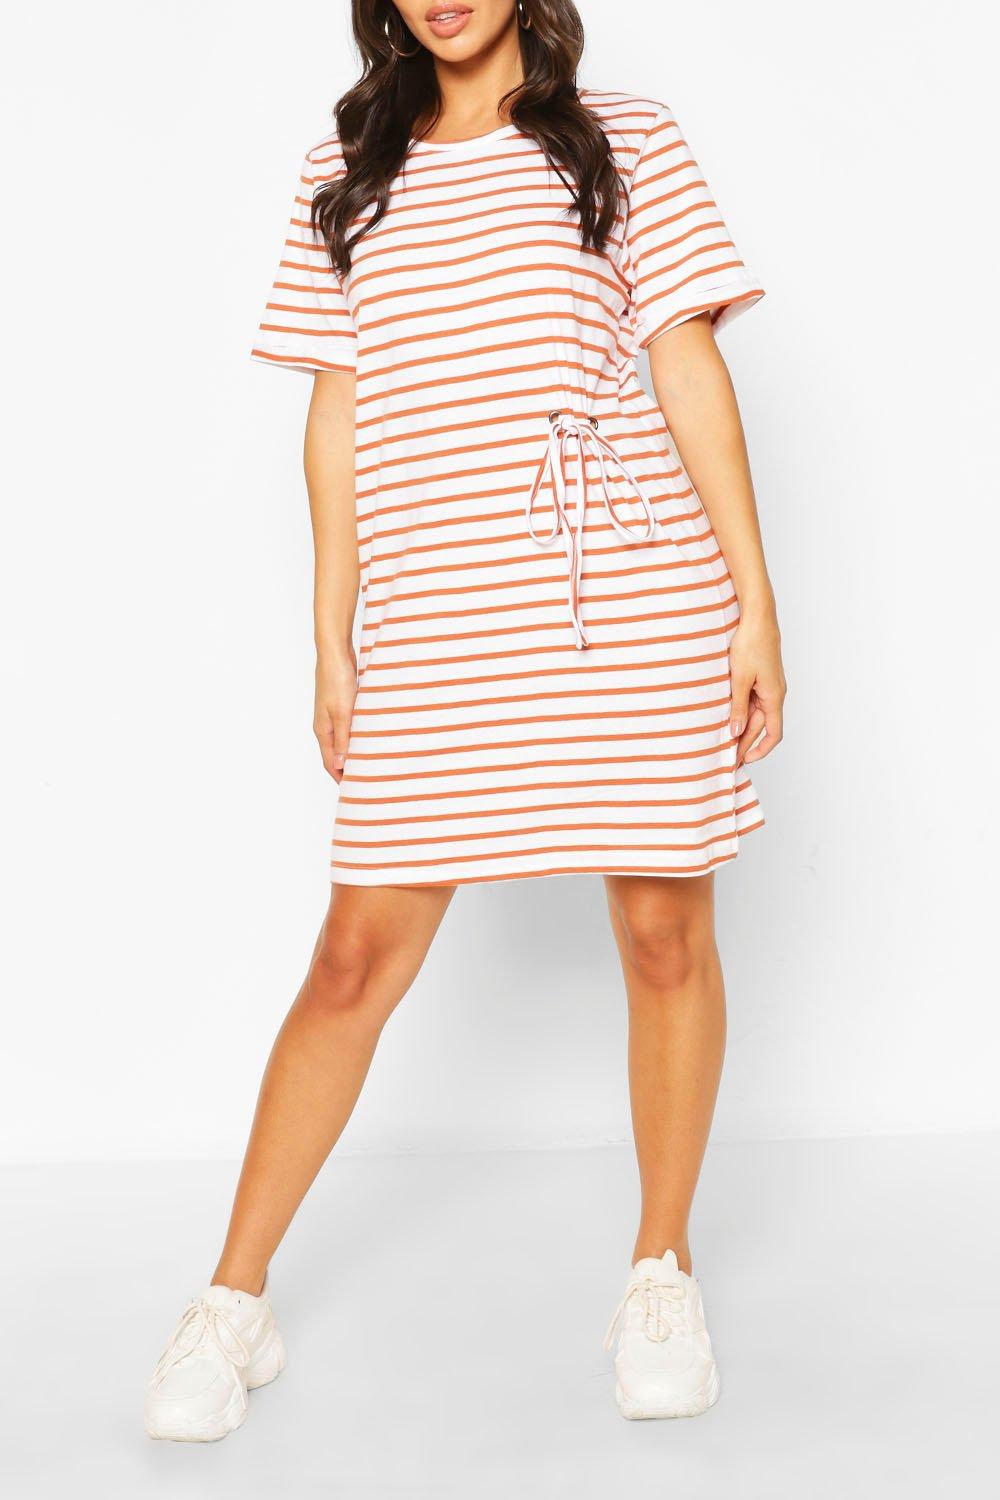 boohoo striped dress